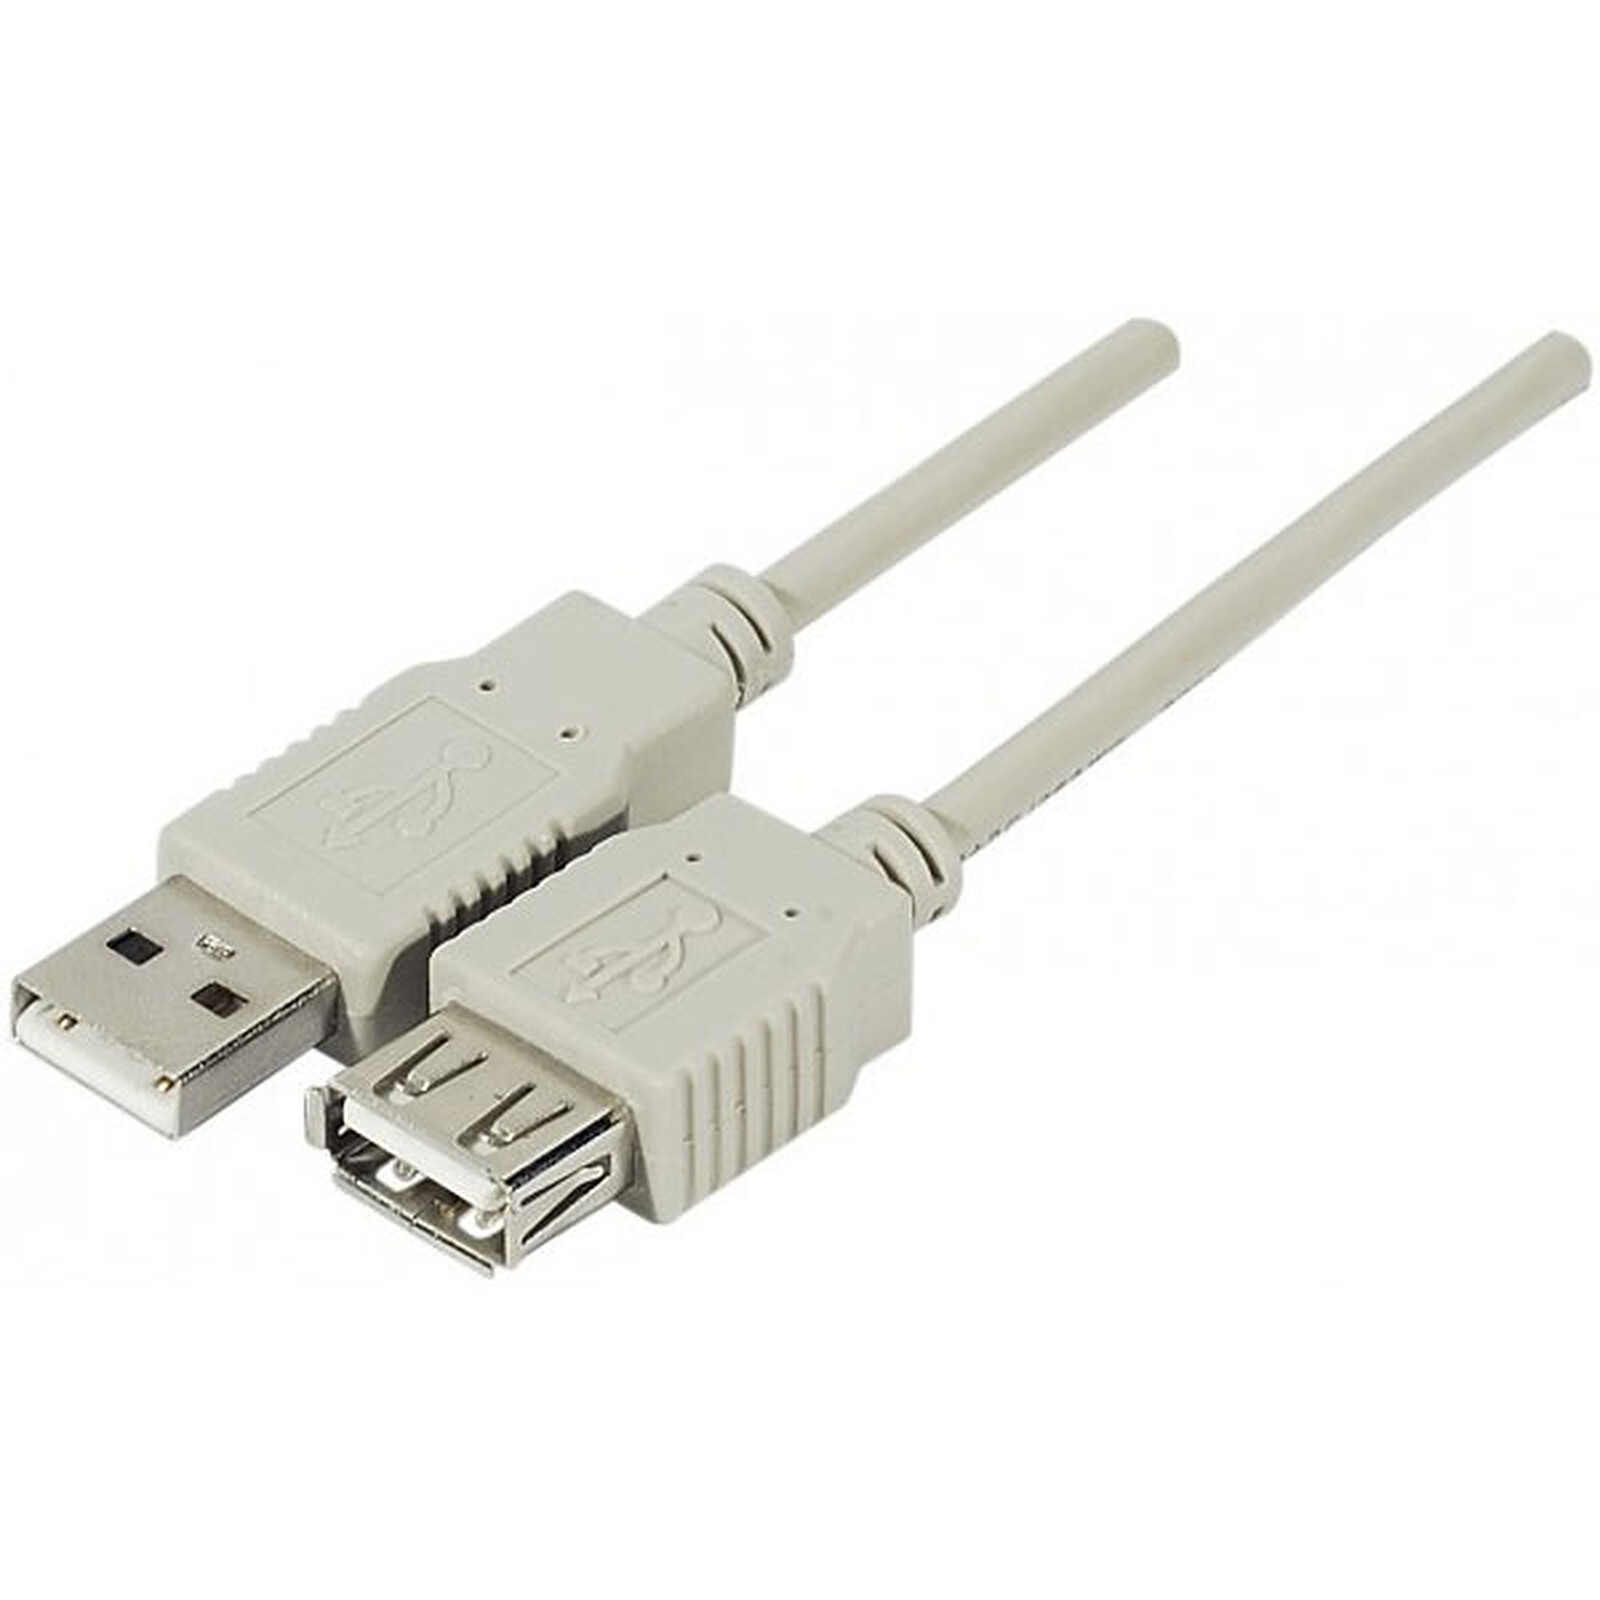 Prolongateur USB 2.0 actif A Mâle / Femelle 30m - Achat/Vente